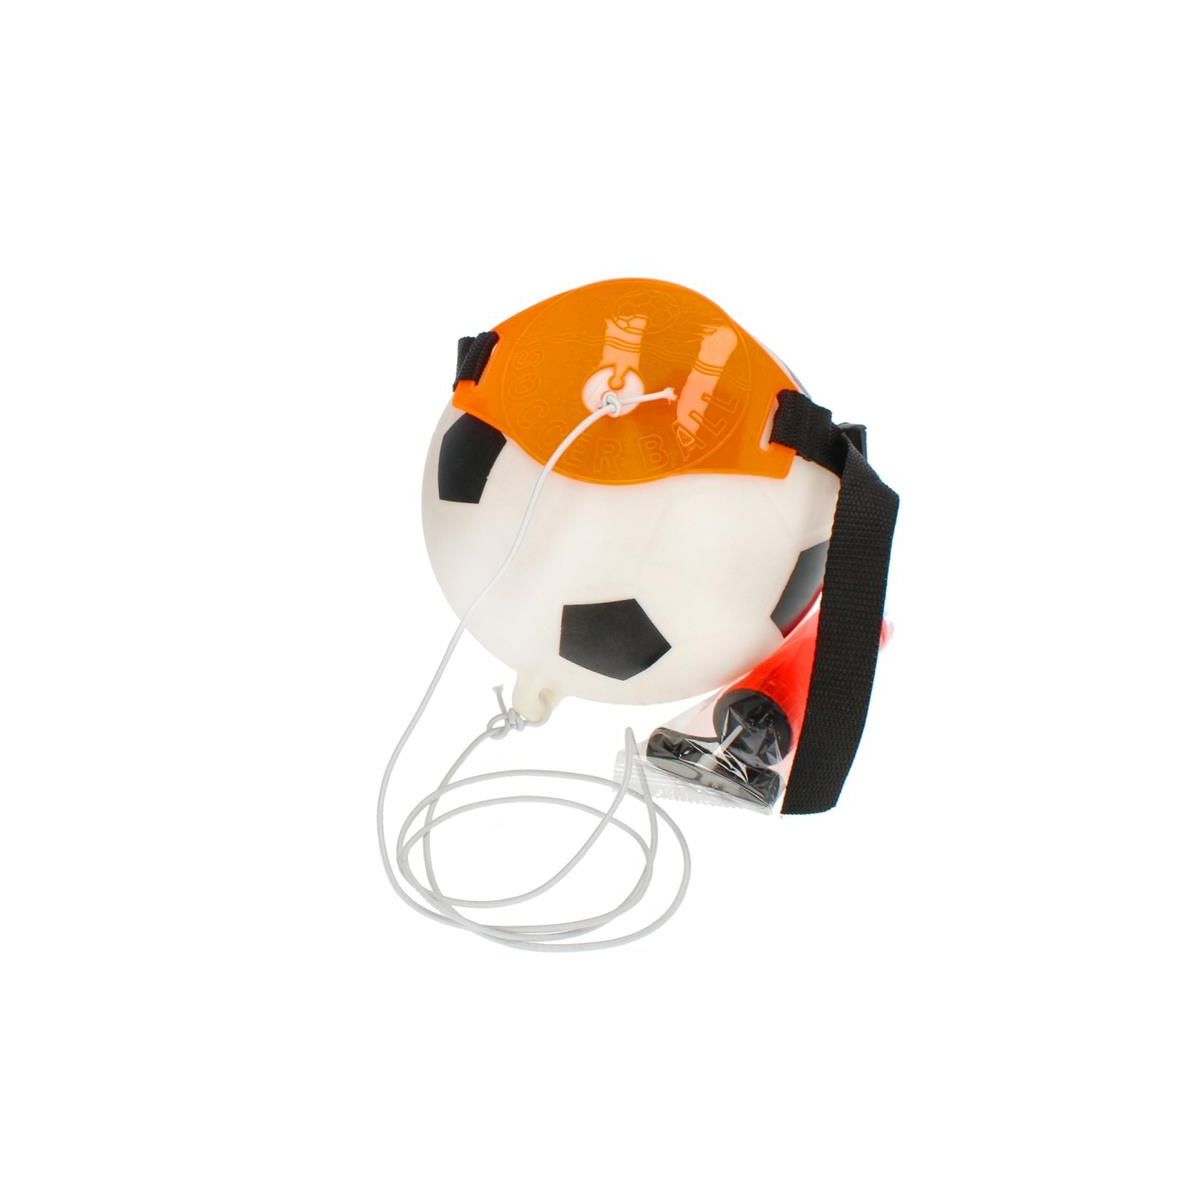 Piłka nożna treningowa + akcesoria Mega Creative (471894)